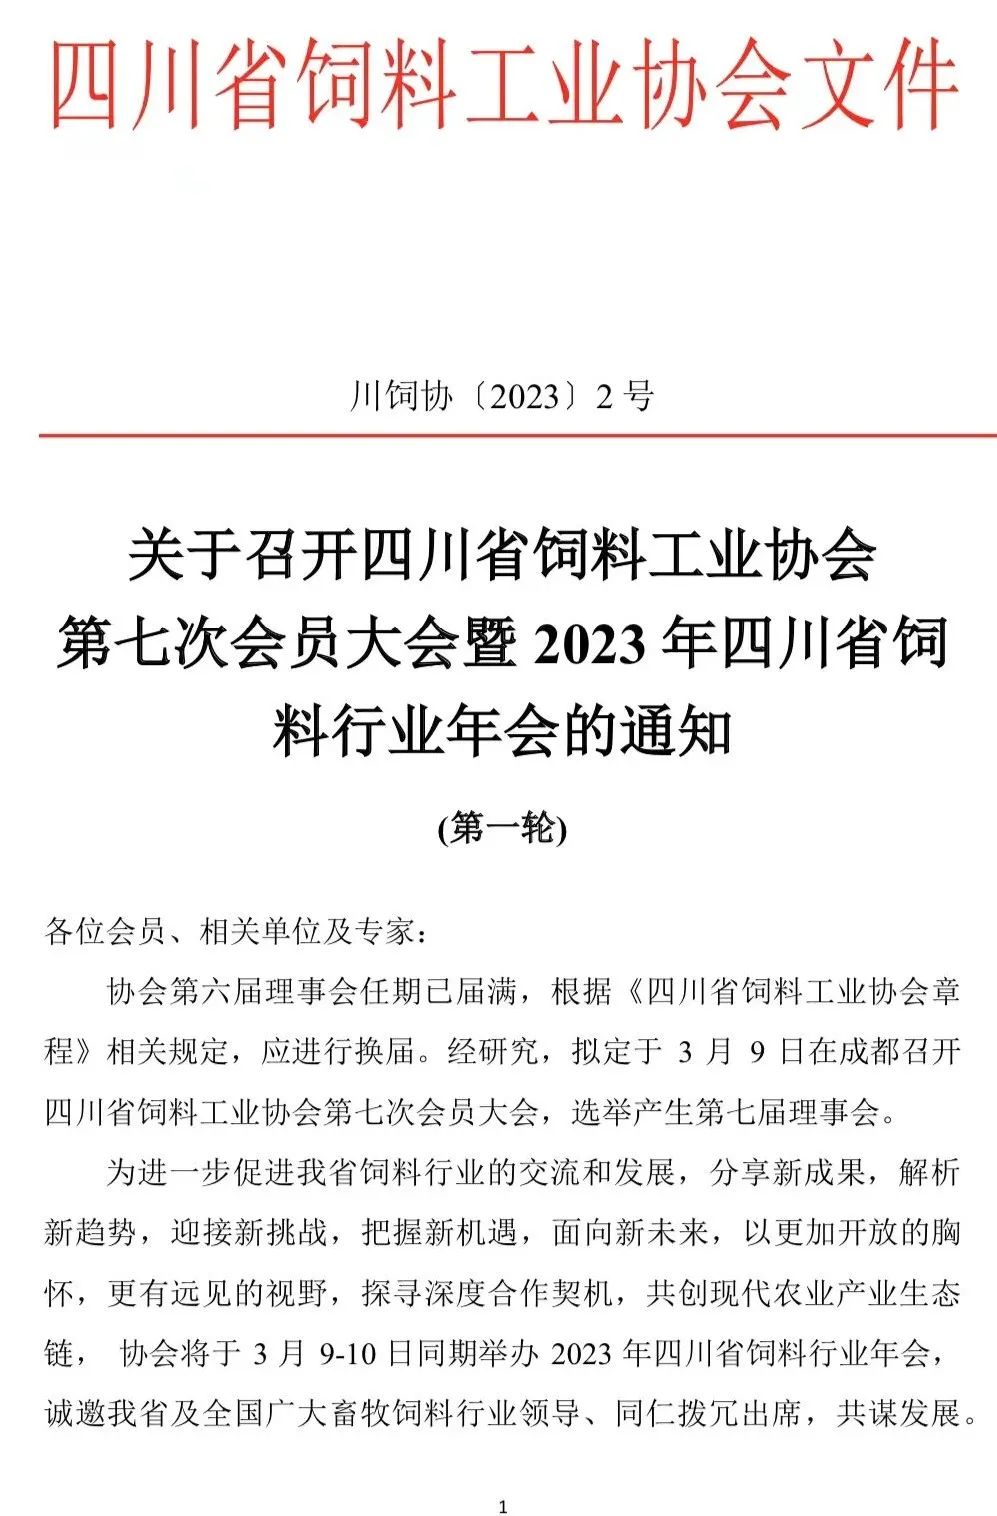 关于召开四川省饲料工业协会第七次会员大会暨2023年四川省饲料行业年会的通知